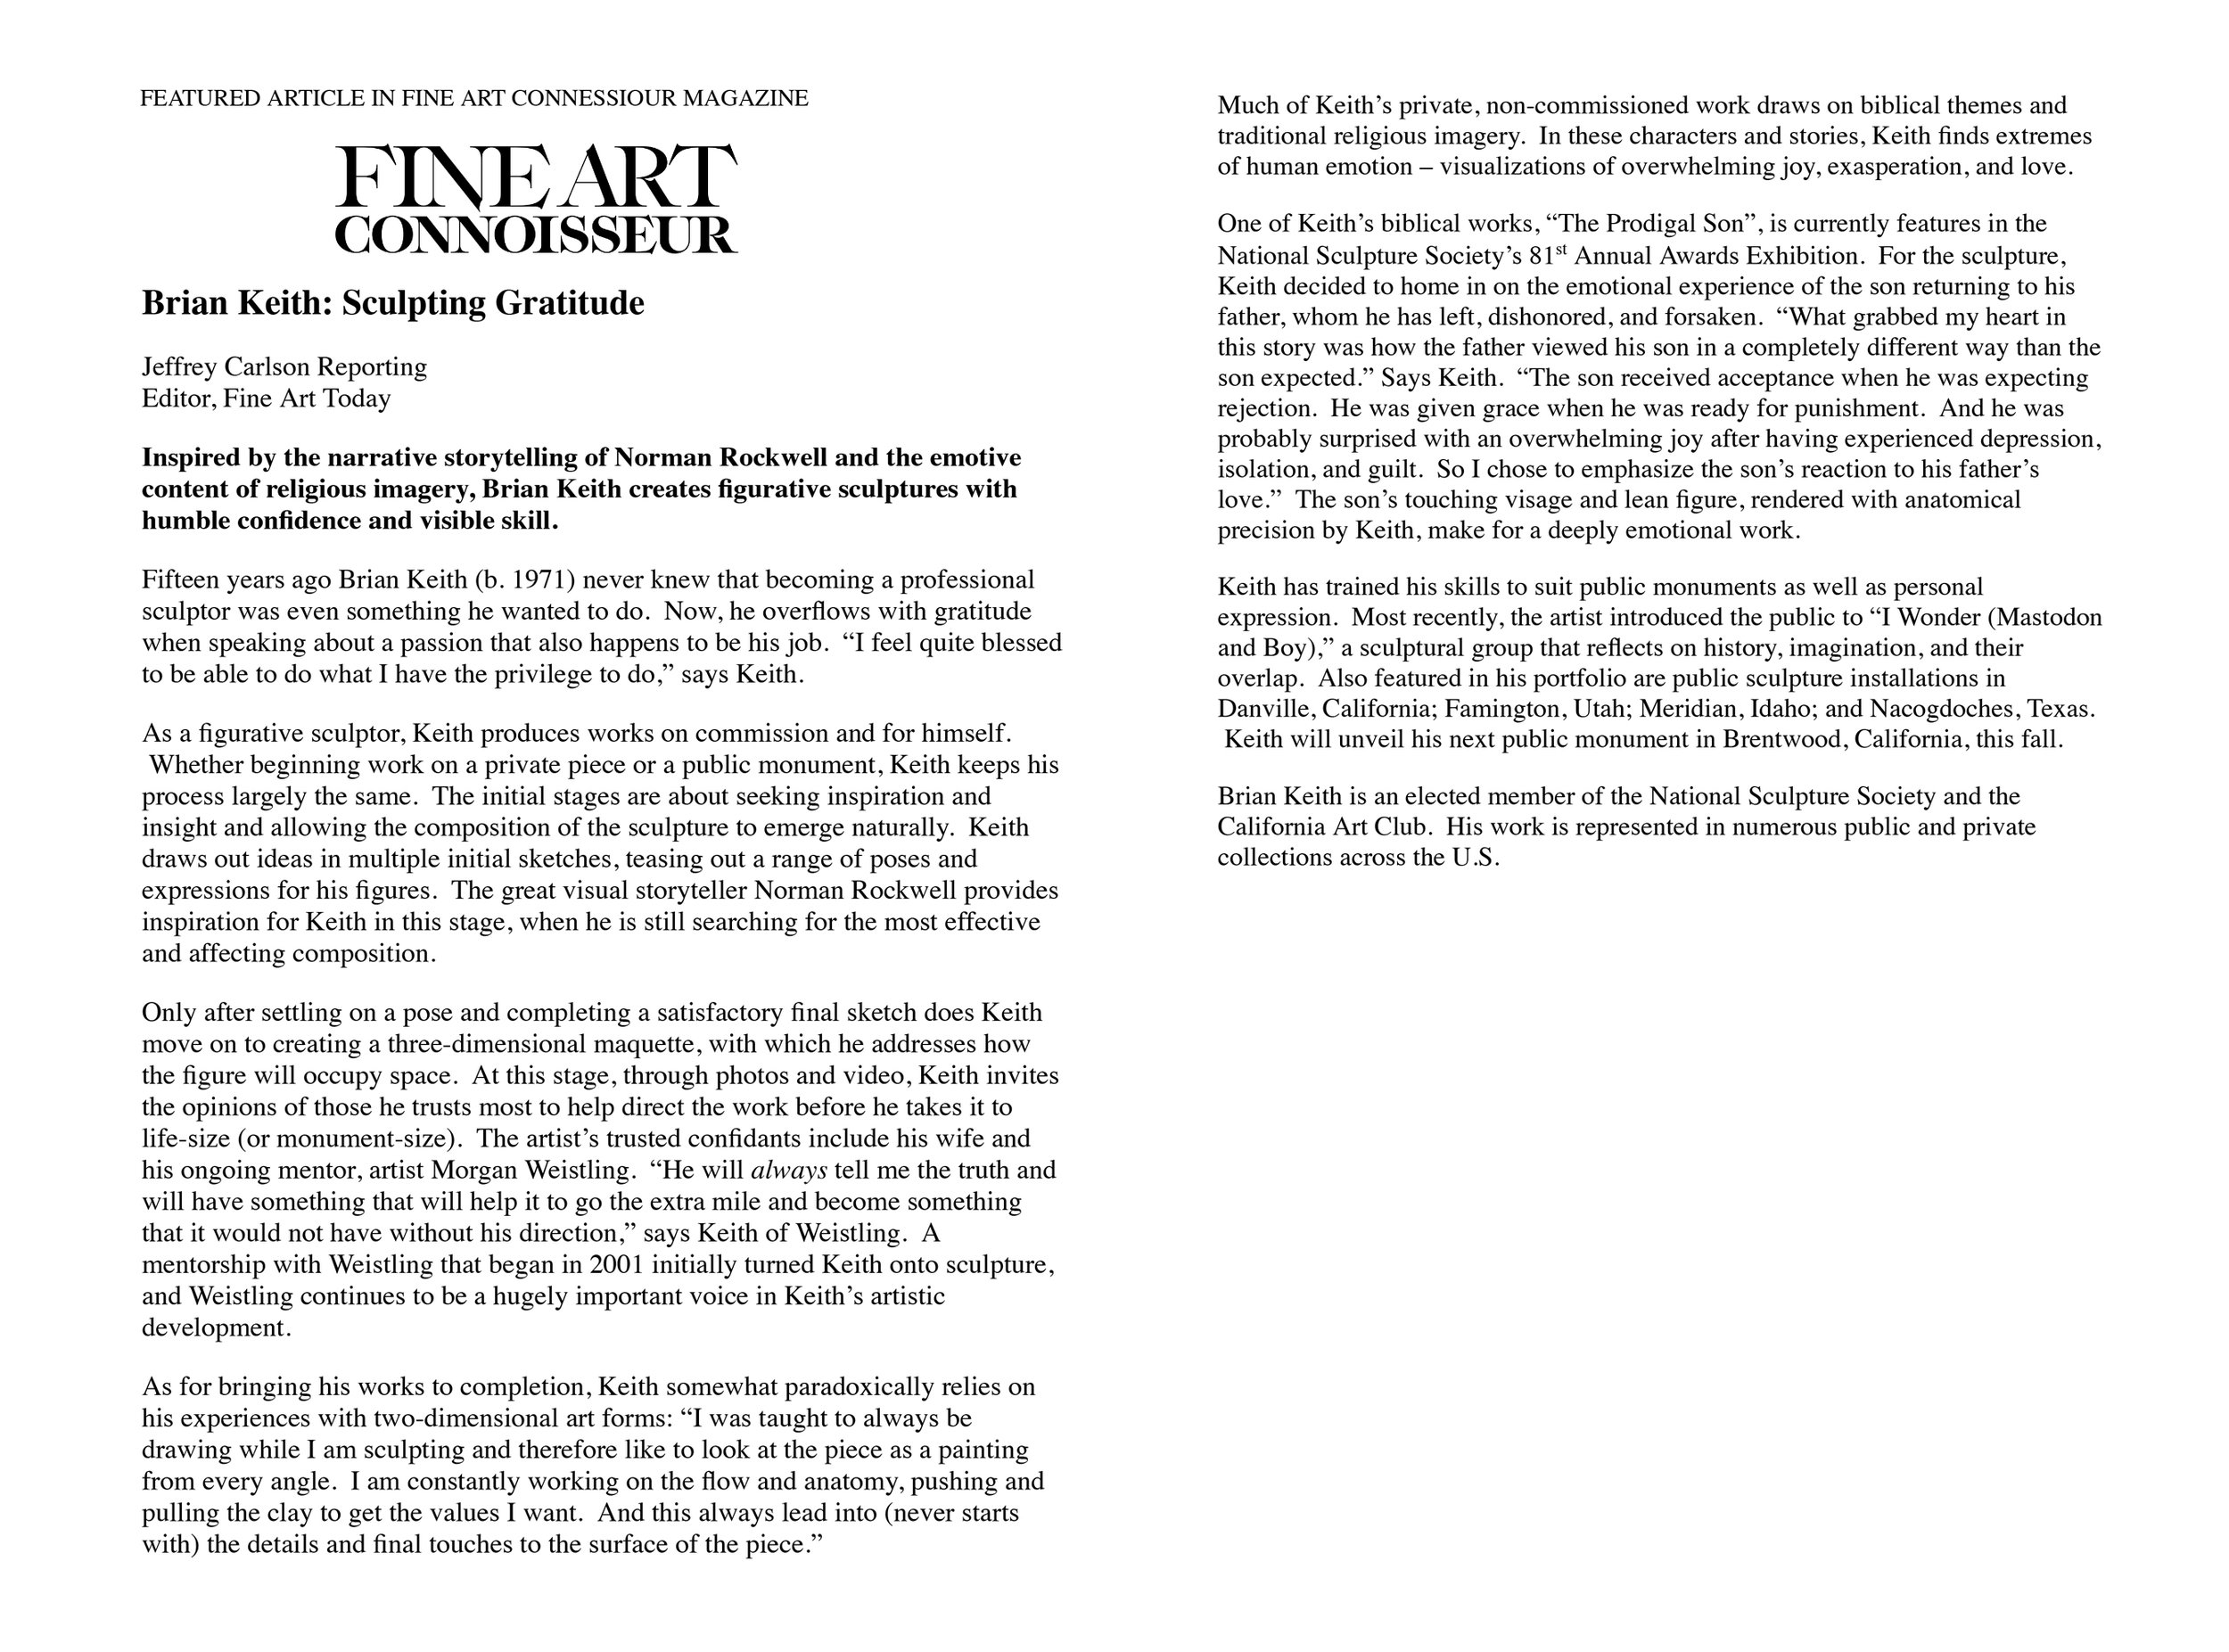 Fine Art Connoisseur Magazine Feature Article